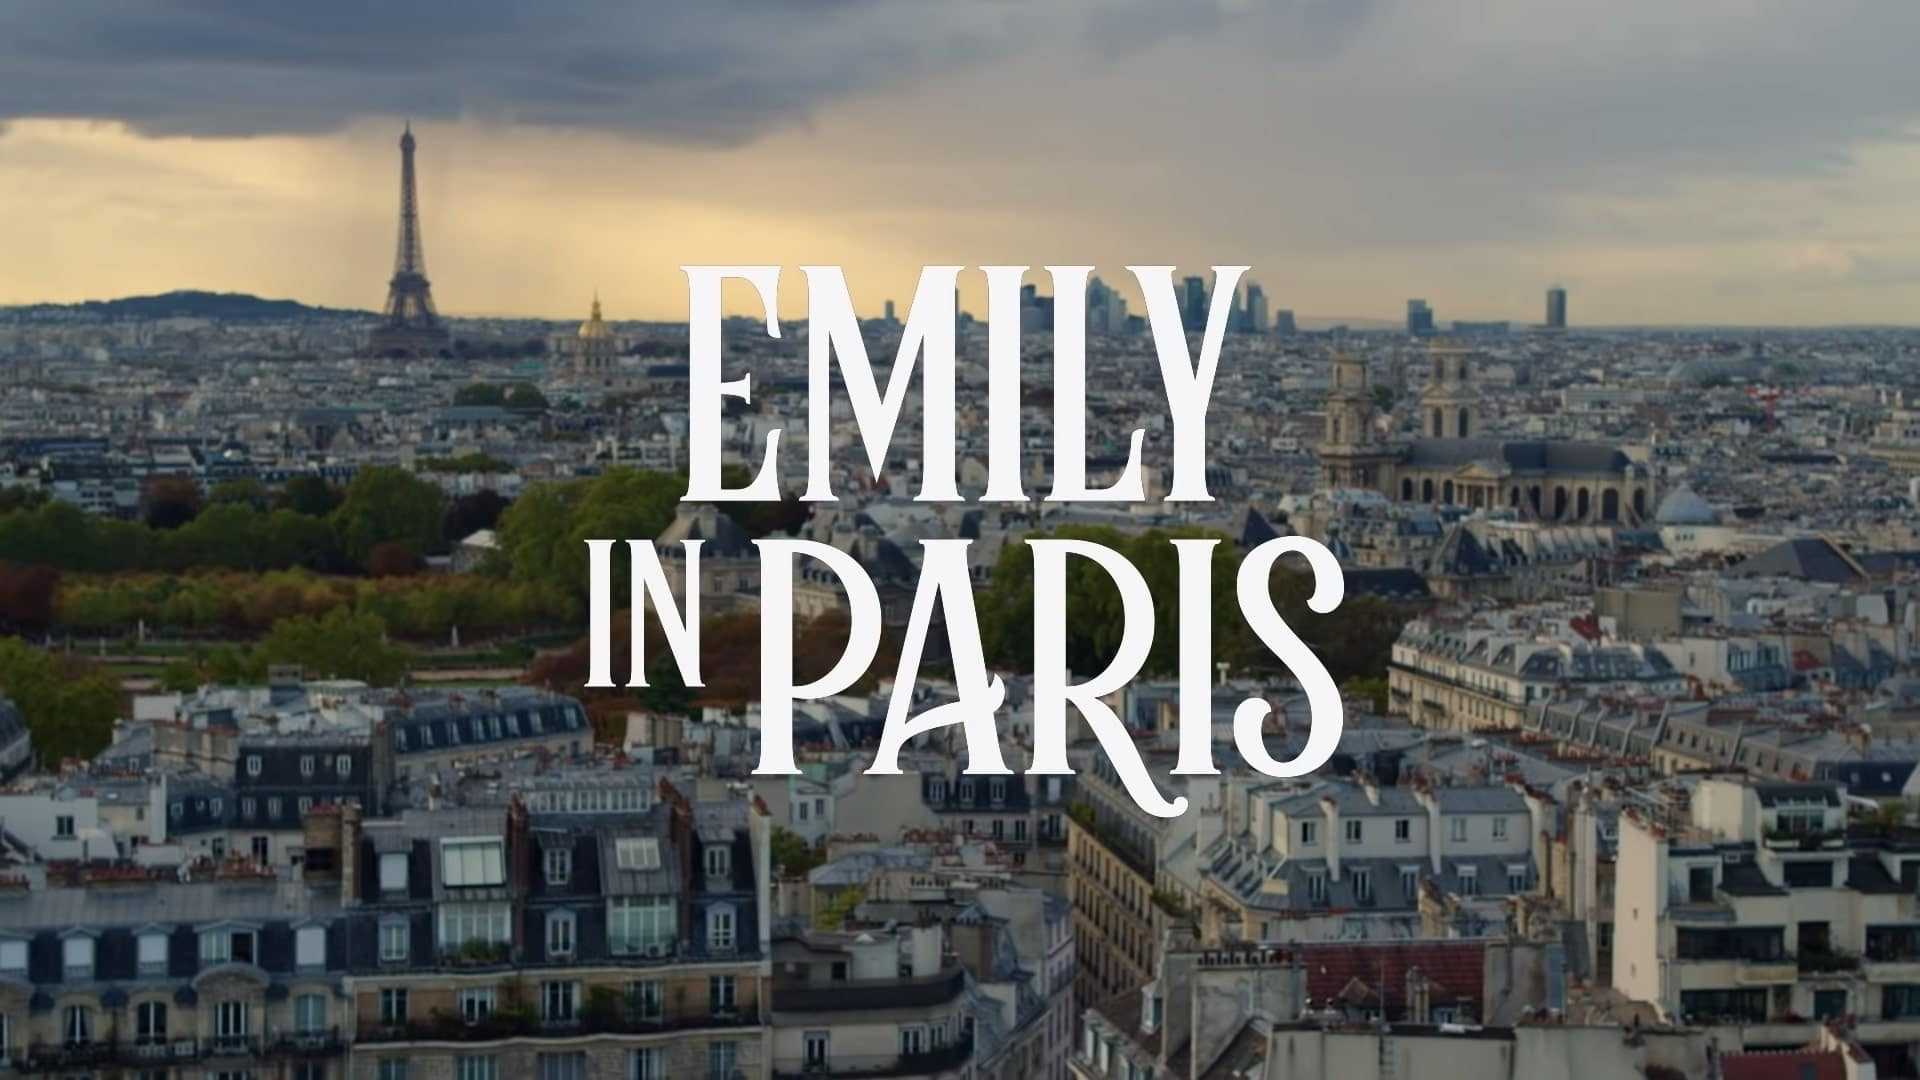 HD Emily In Paris Wallpaper 1